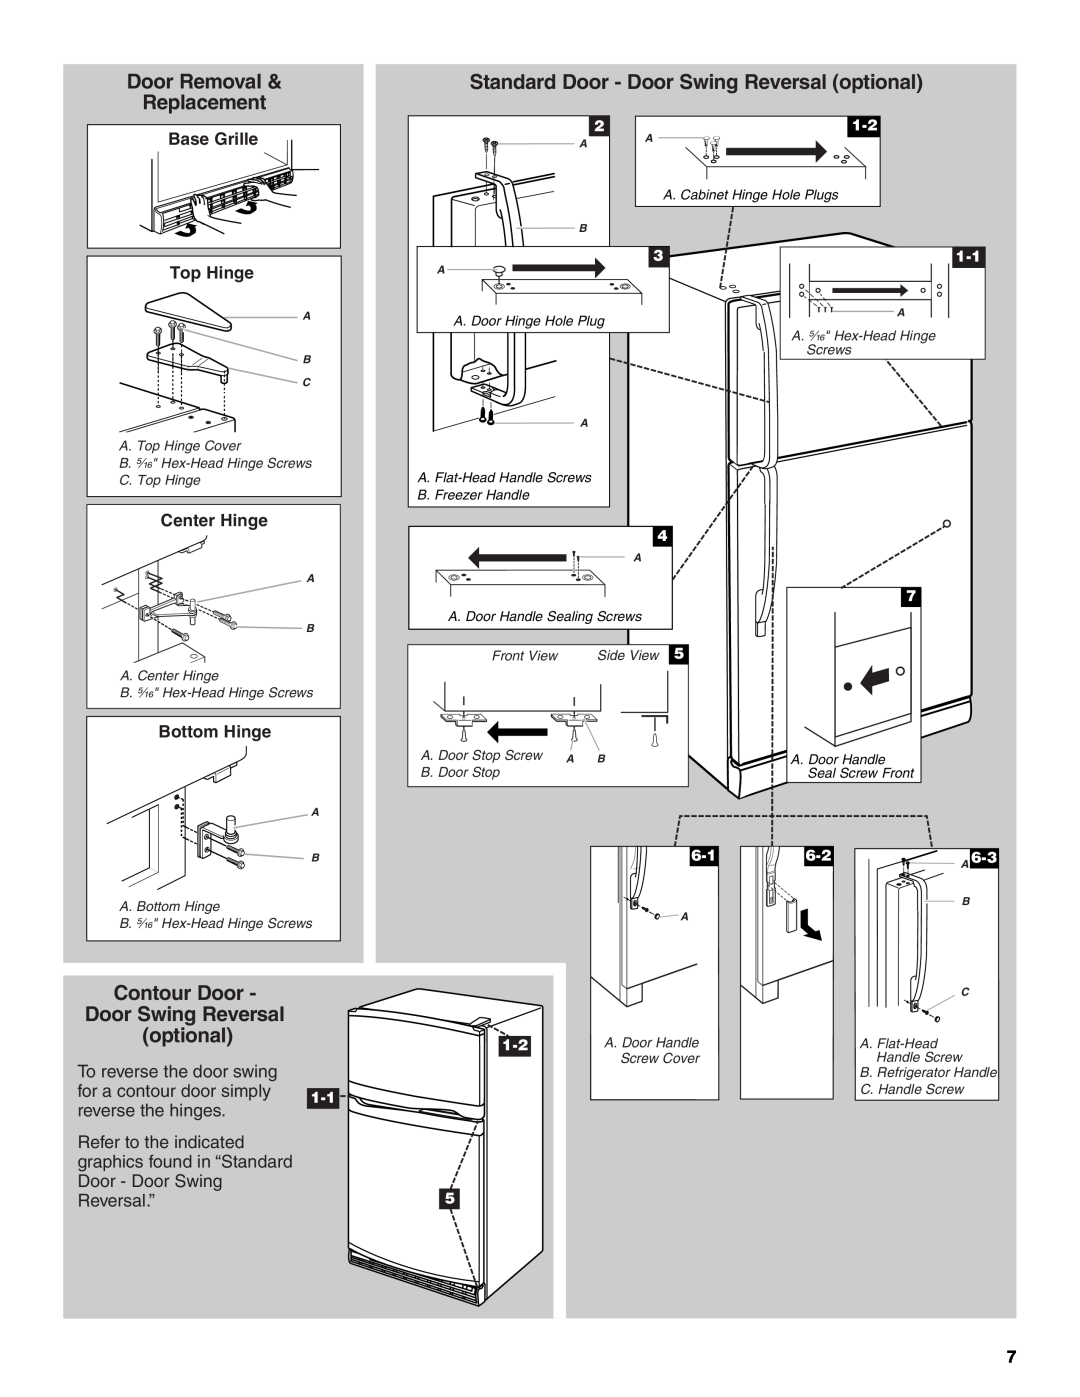 Whirlpool GR2FHTXV Door Removal, Standard Door - Door Swing Reversal optional, Replacement, Contour Door, Reversal.”5 